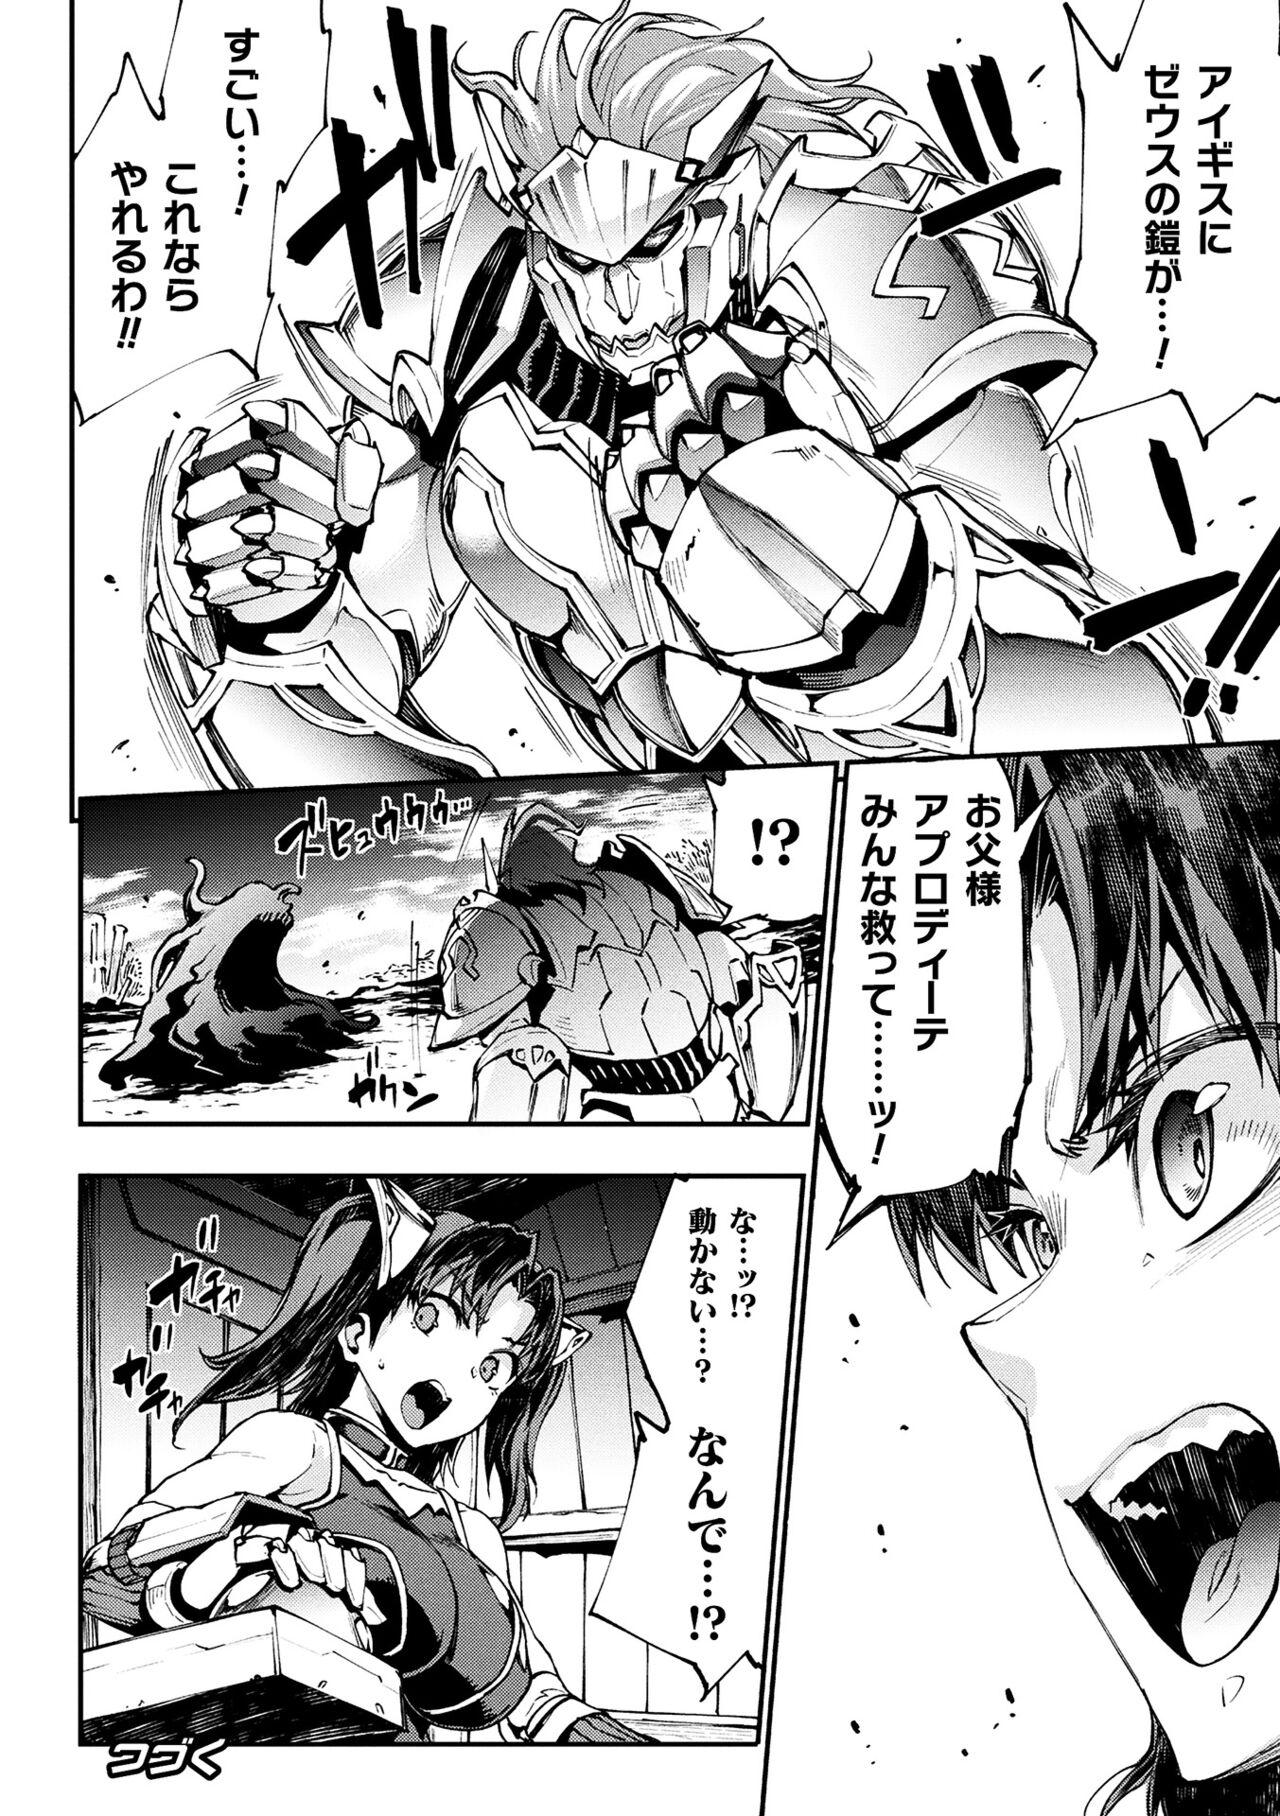 [Erect Sawaru] Raikou Shinki Igis Magia III -PANDRA saga 3rd ignition- 4 [Digital] 149